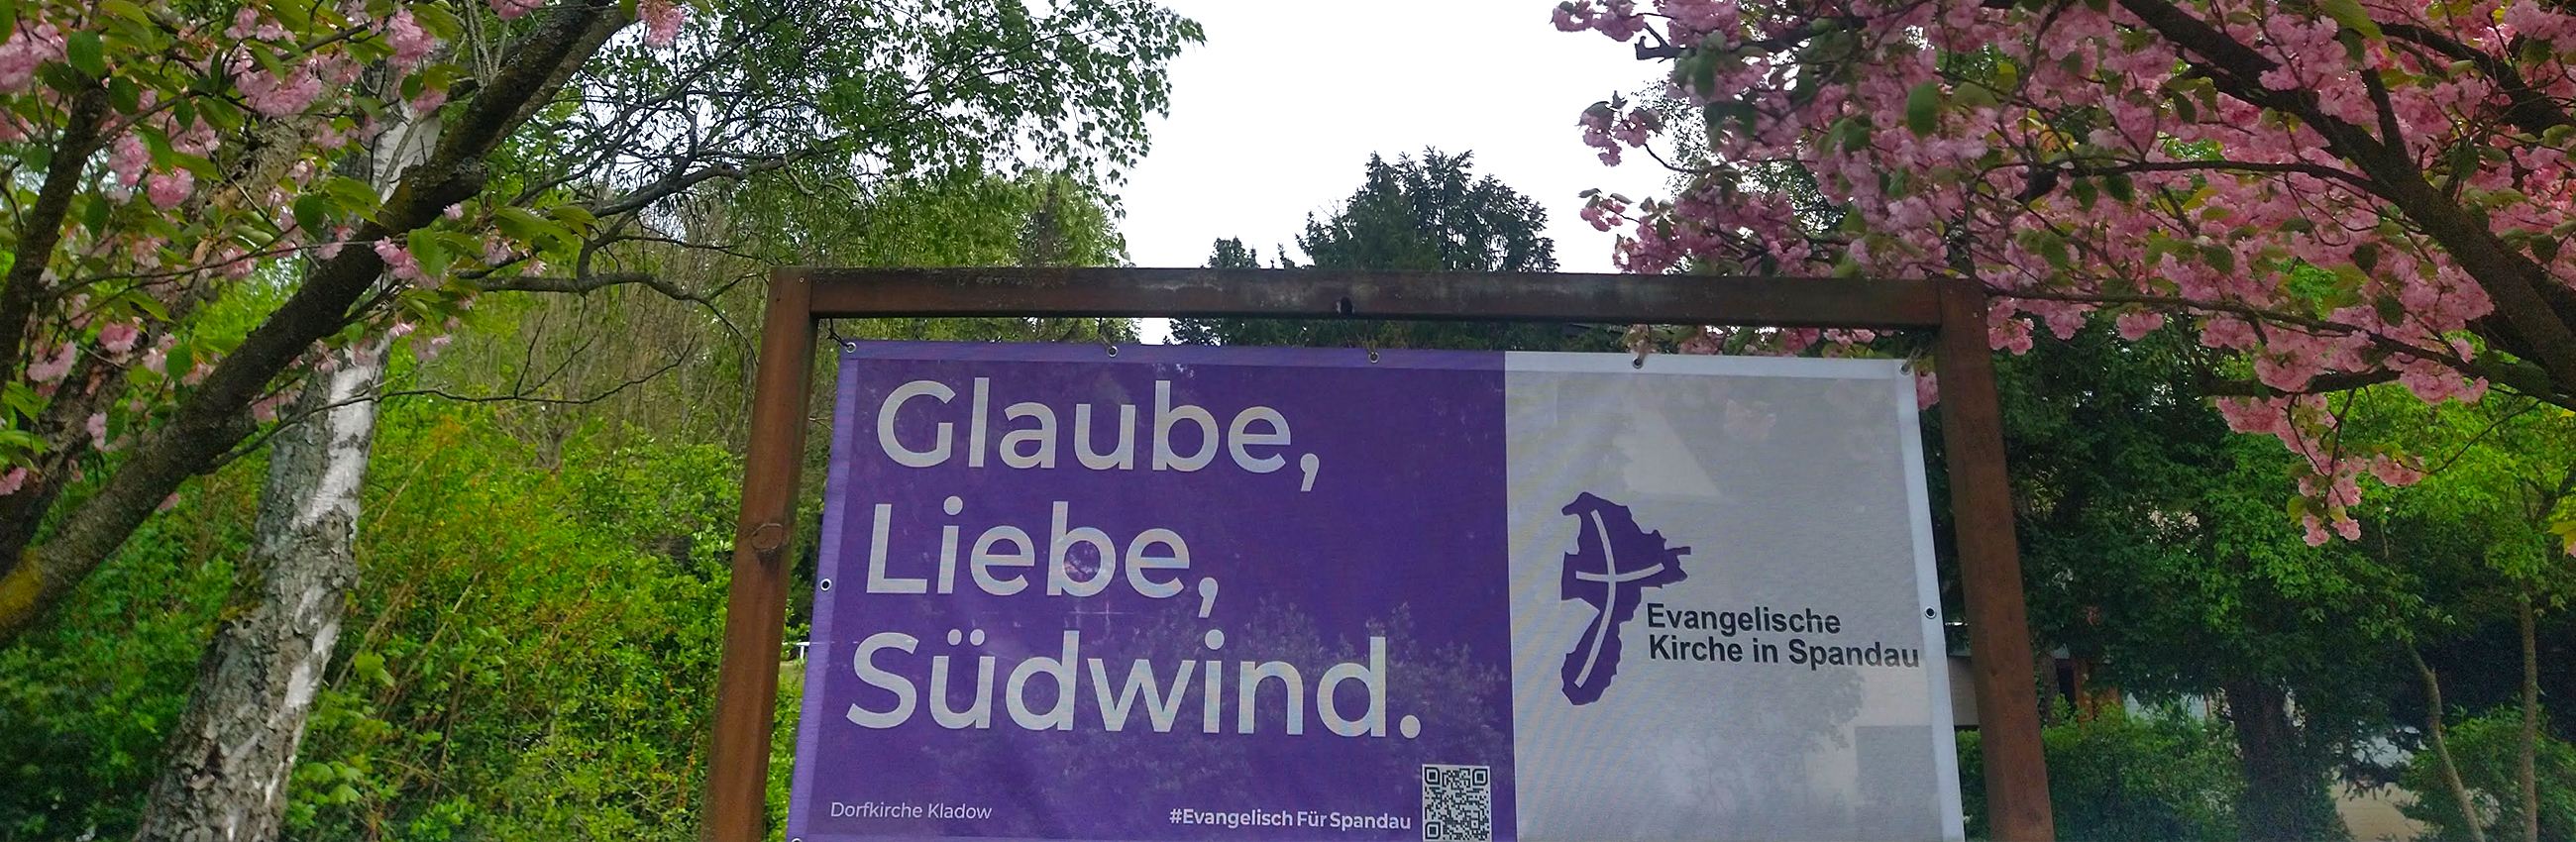 Banner "Glaube, Liebe, Südwind" vor blühenden Bäumen